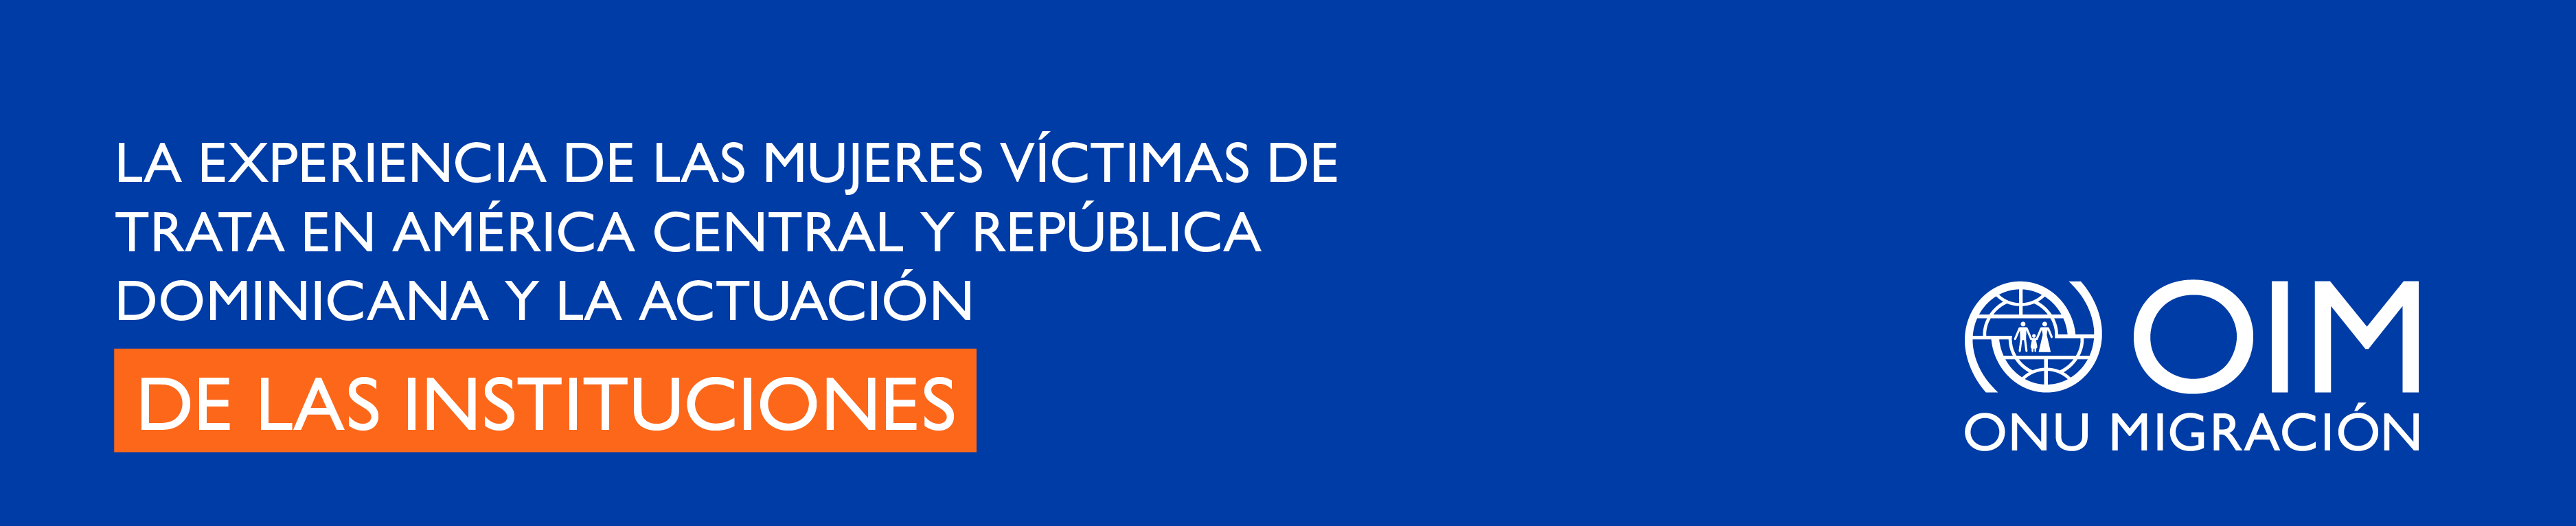 La experiencia de las mujeres víctimas de trata en América Central y República Dominicana y la actuación de las instituciones